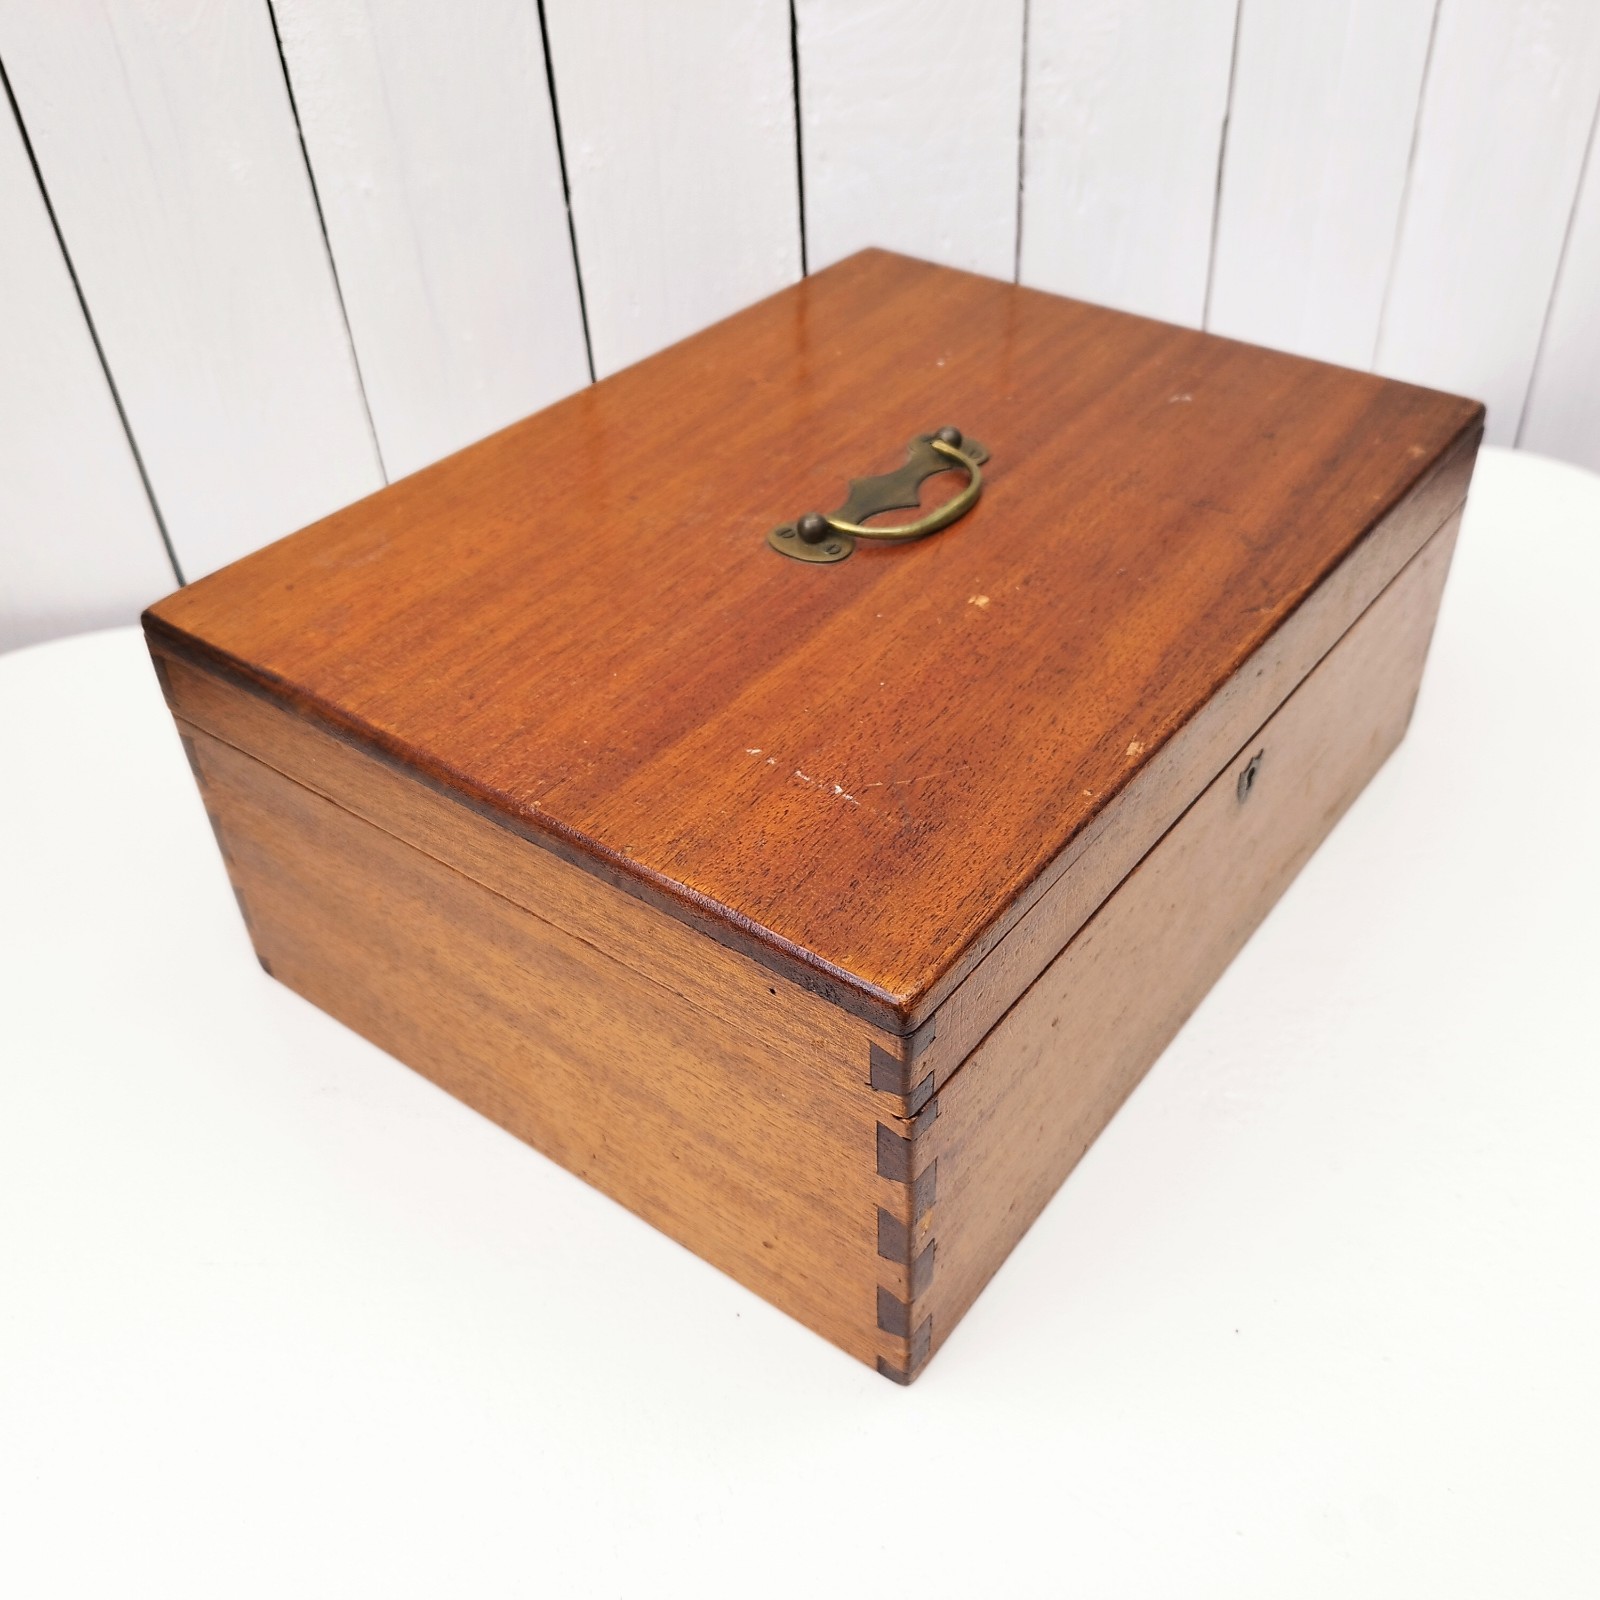 Boîte à clefs bois vernis déco vintage Chehoma [32557]